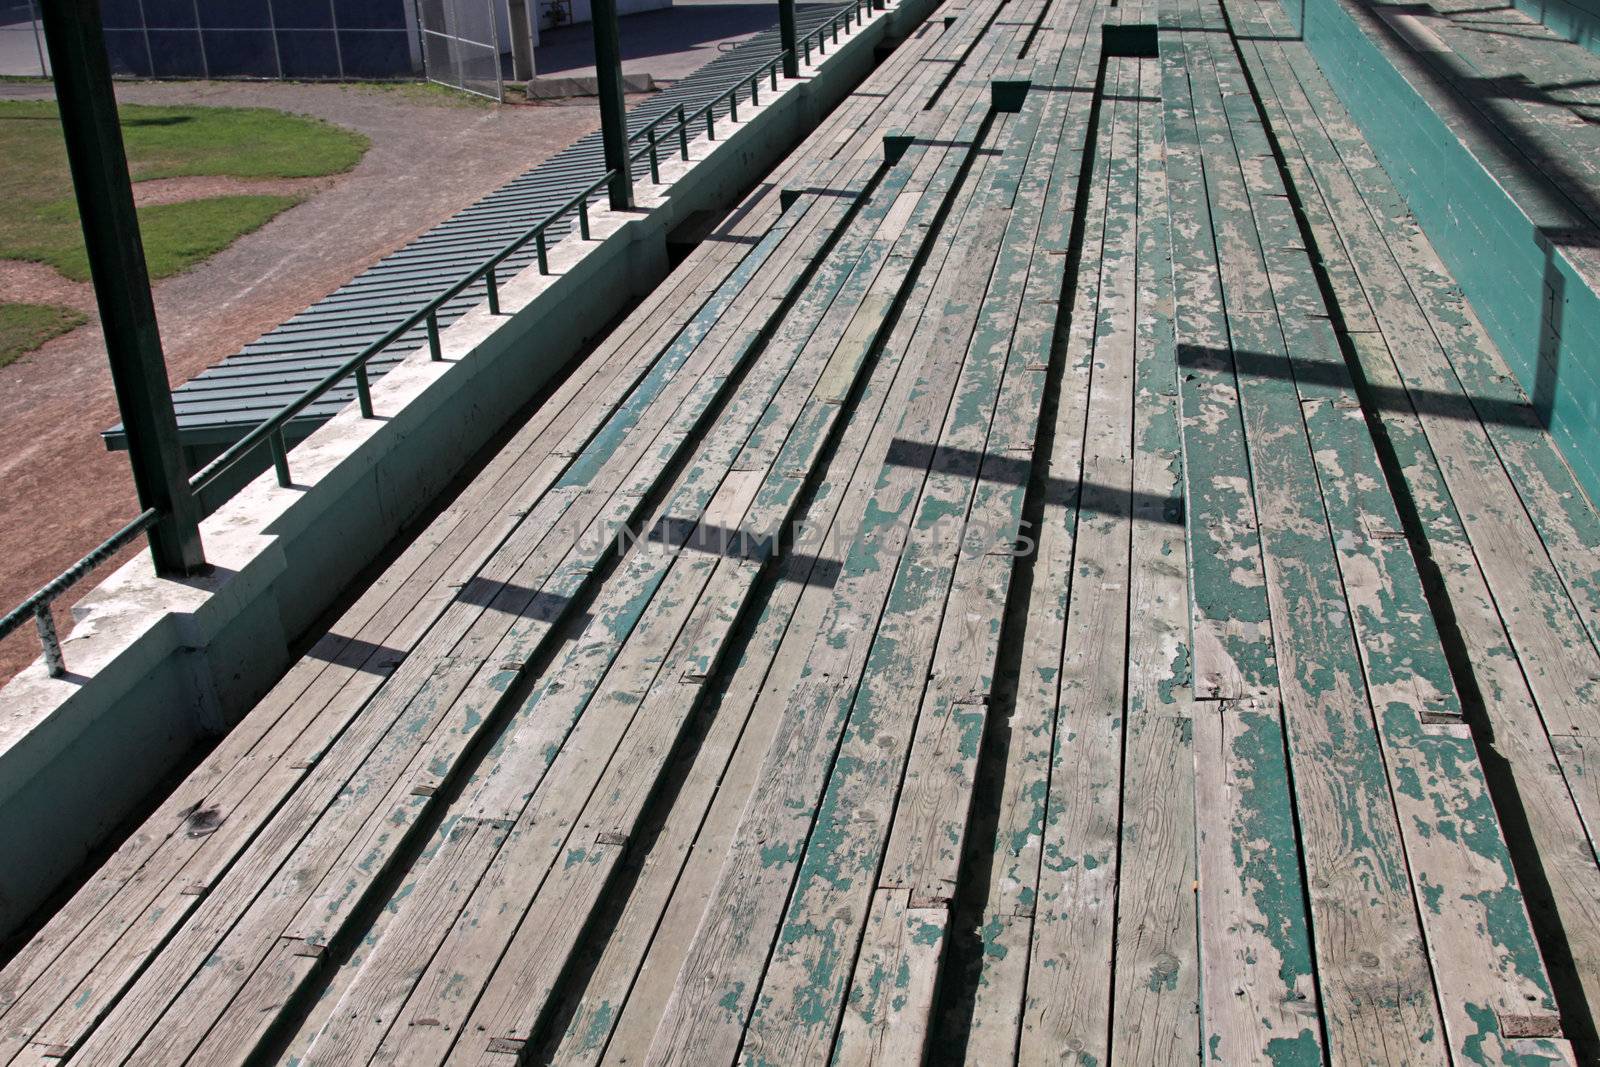 Wooden bleachers at a baseball field.